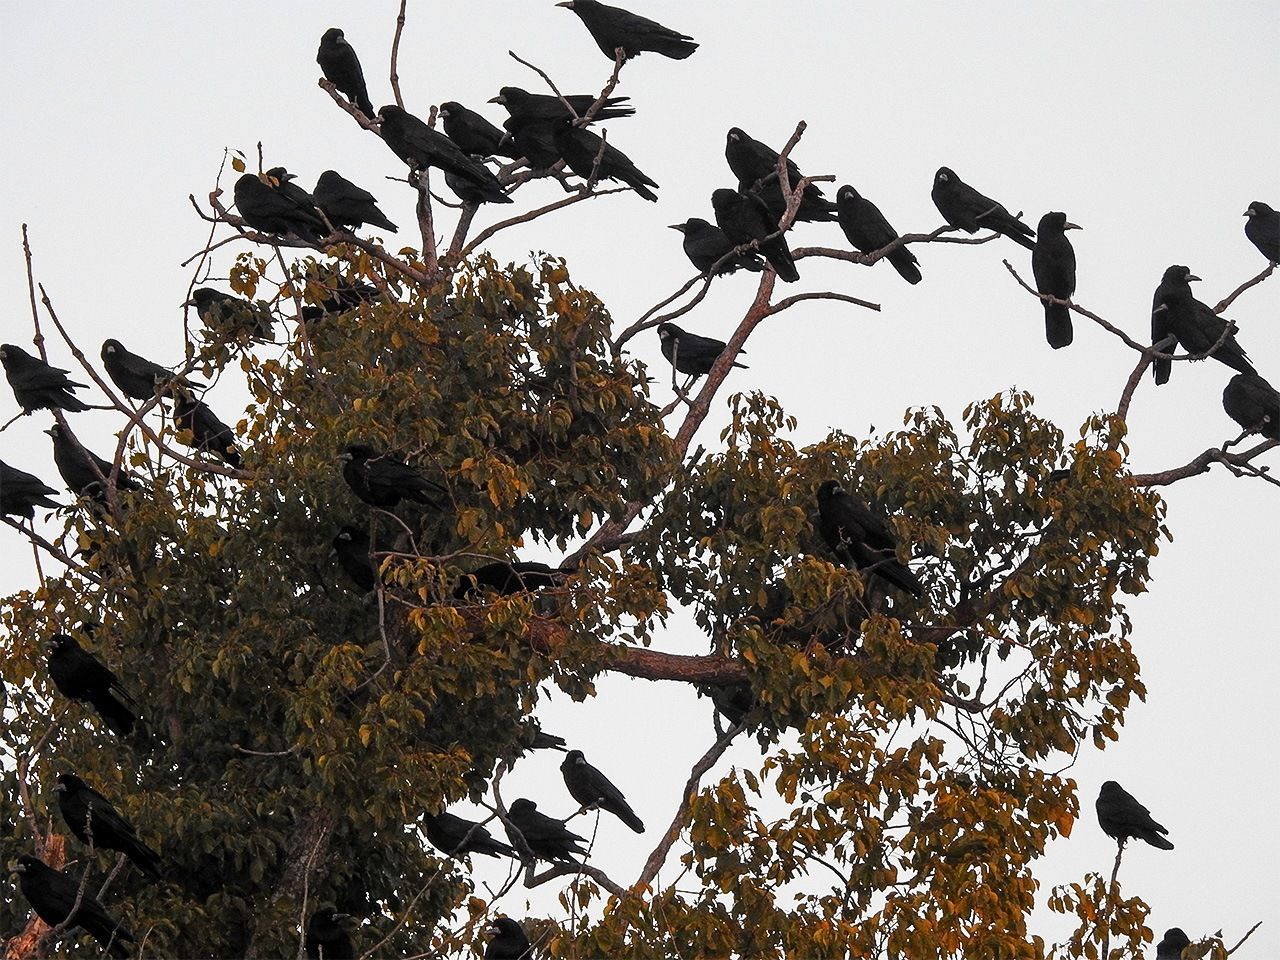 يسبب نعيق الغربان في الأشجار وفضلاتها الكثير من المشاكل.